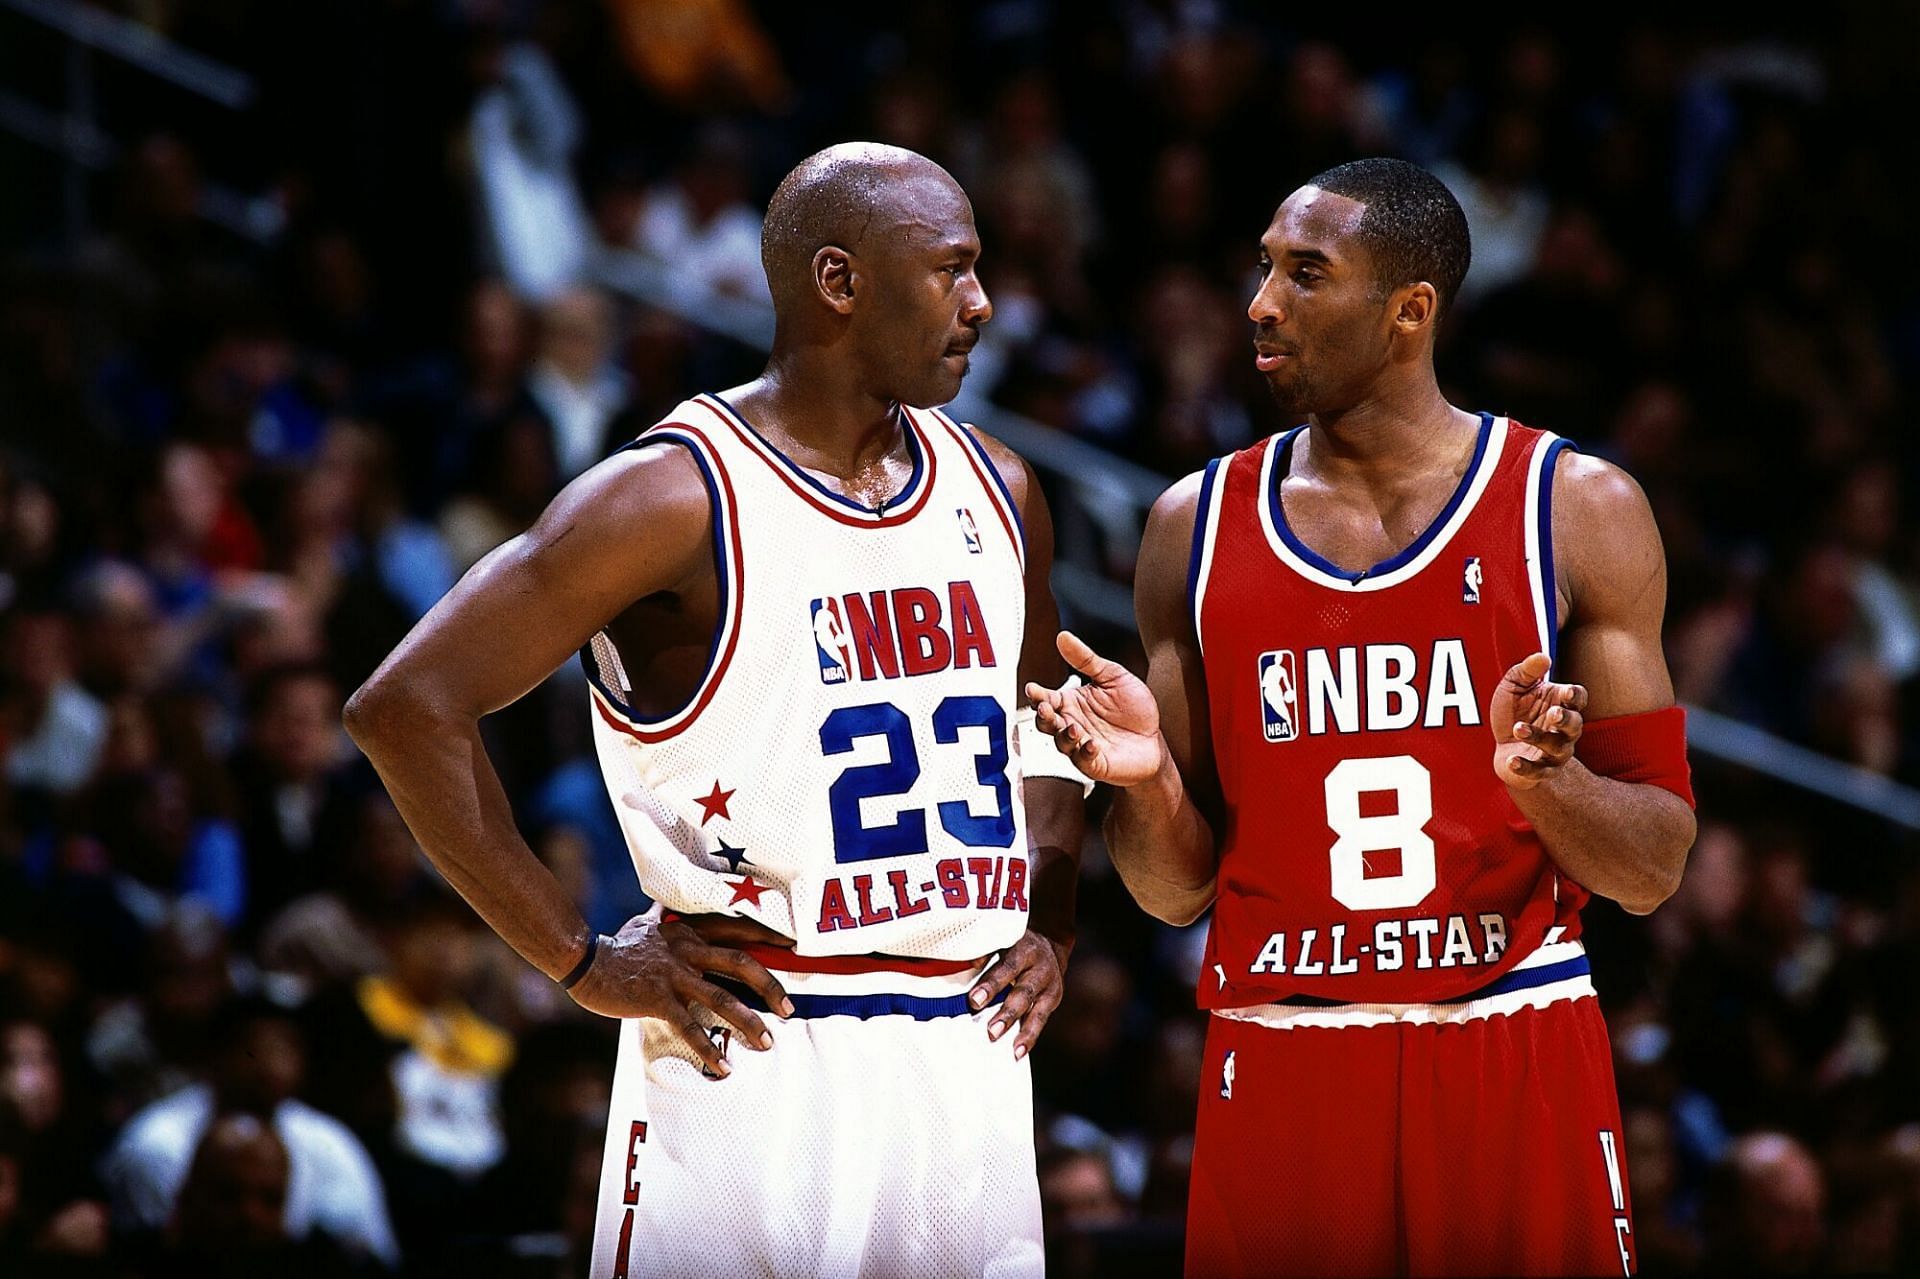 Kobe Bryant and Michael Jordan at the 2003 NBA All-Star Game